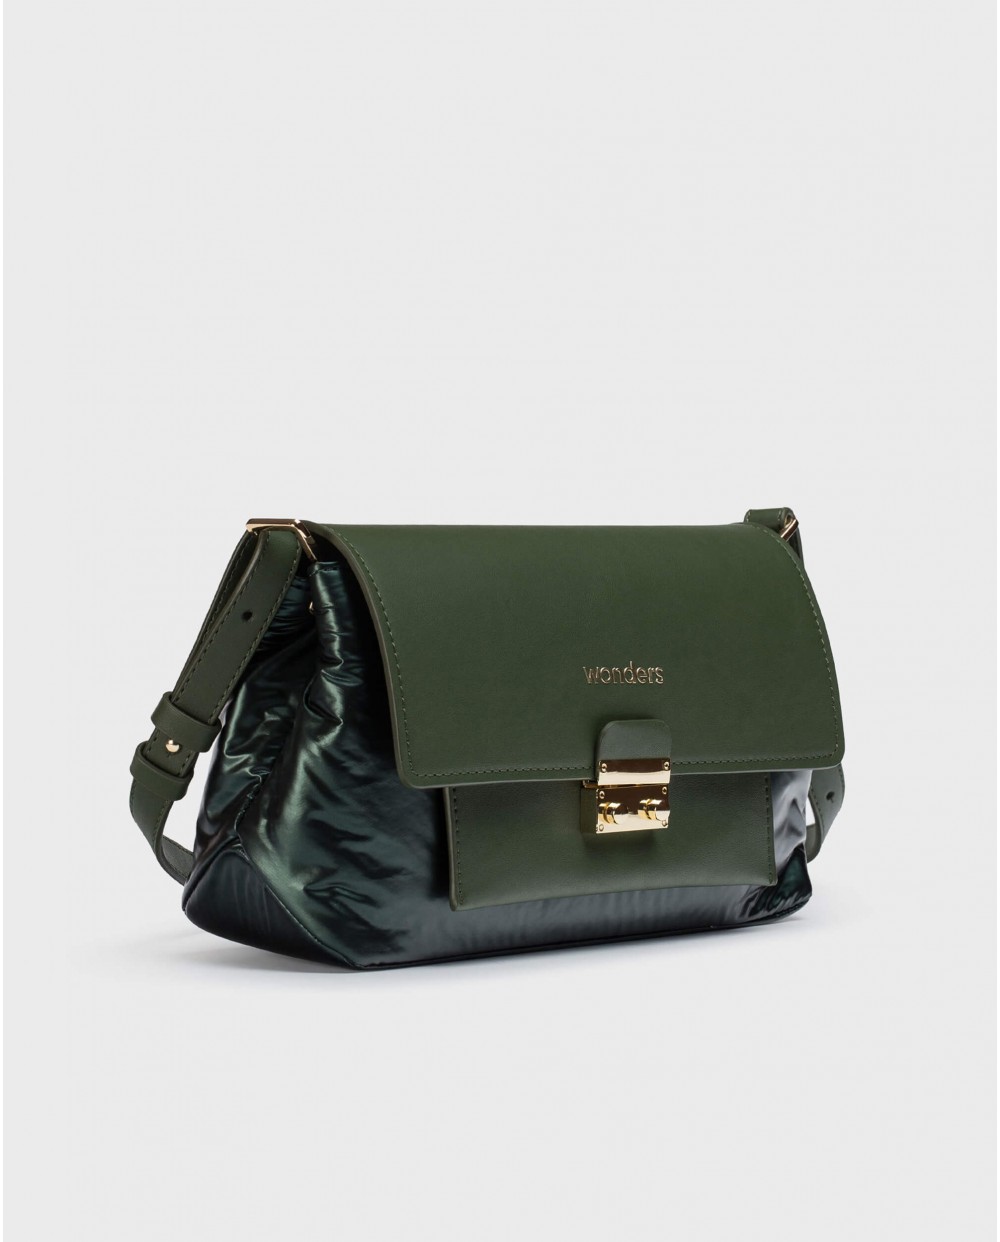 ZENDA Green Bag